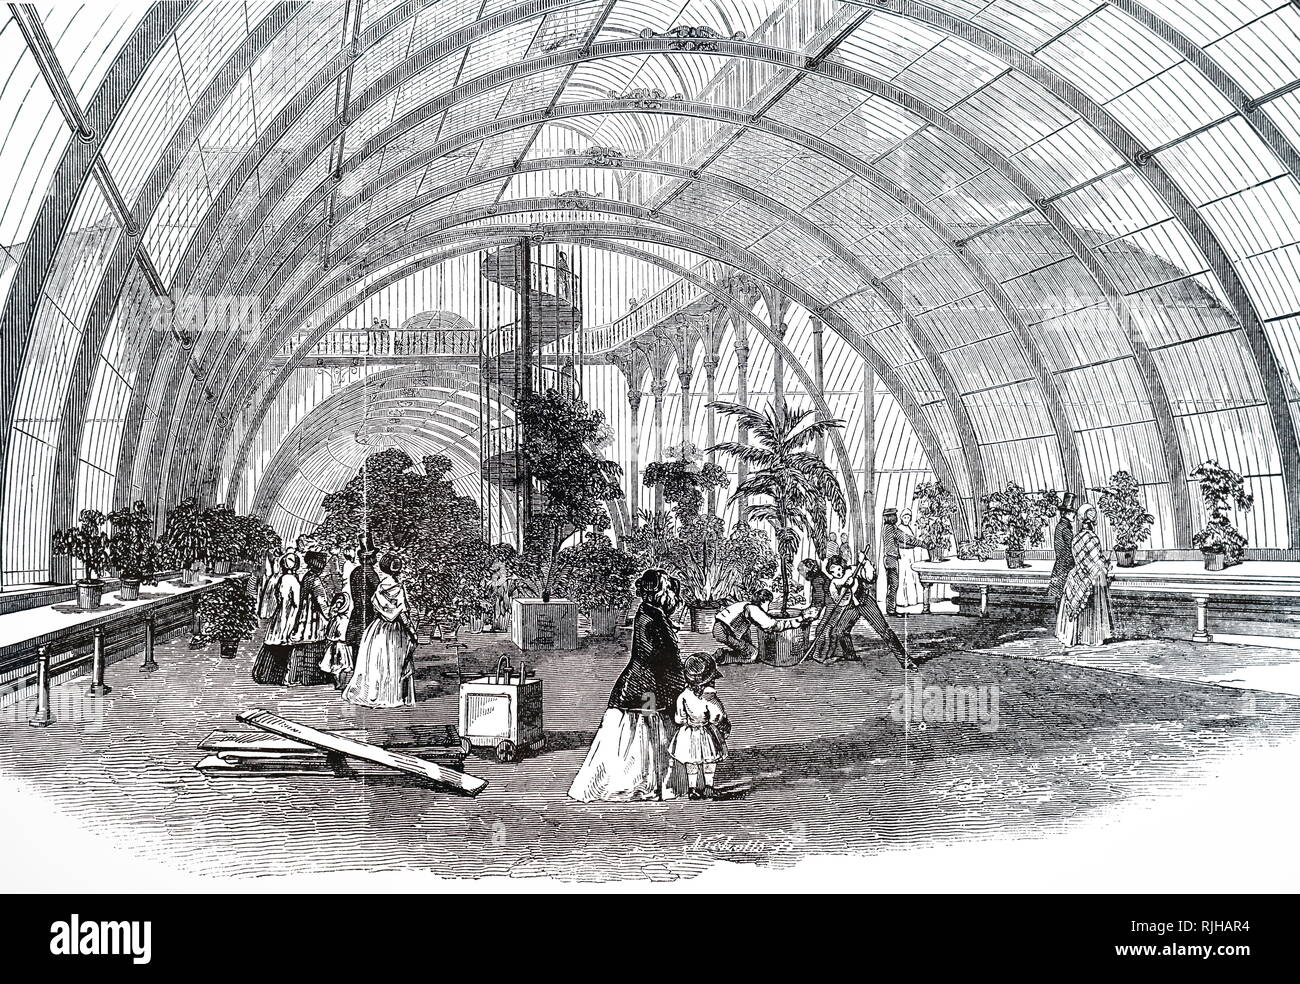 Una incisione raffigurante la casa delle palme, una serra che è specializzato per la coltivazione di palme e altre piante tropicali e subtropicali, Royal Botanical Gardens di Kew Gardens. Datata del XIX secolo Foto Stock